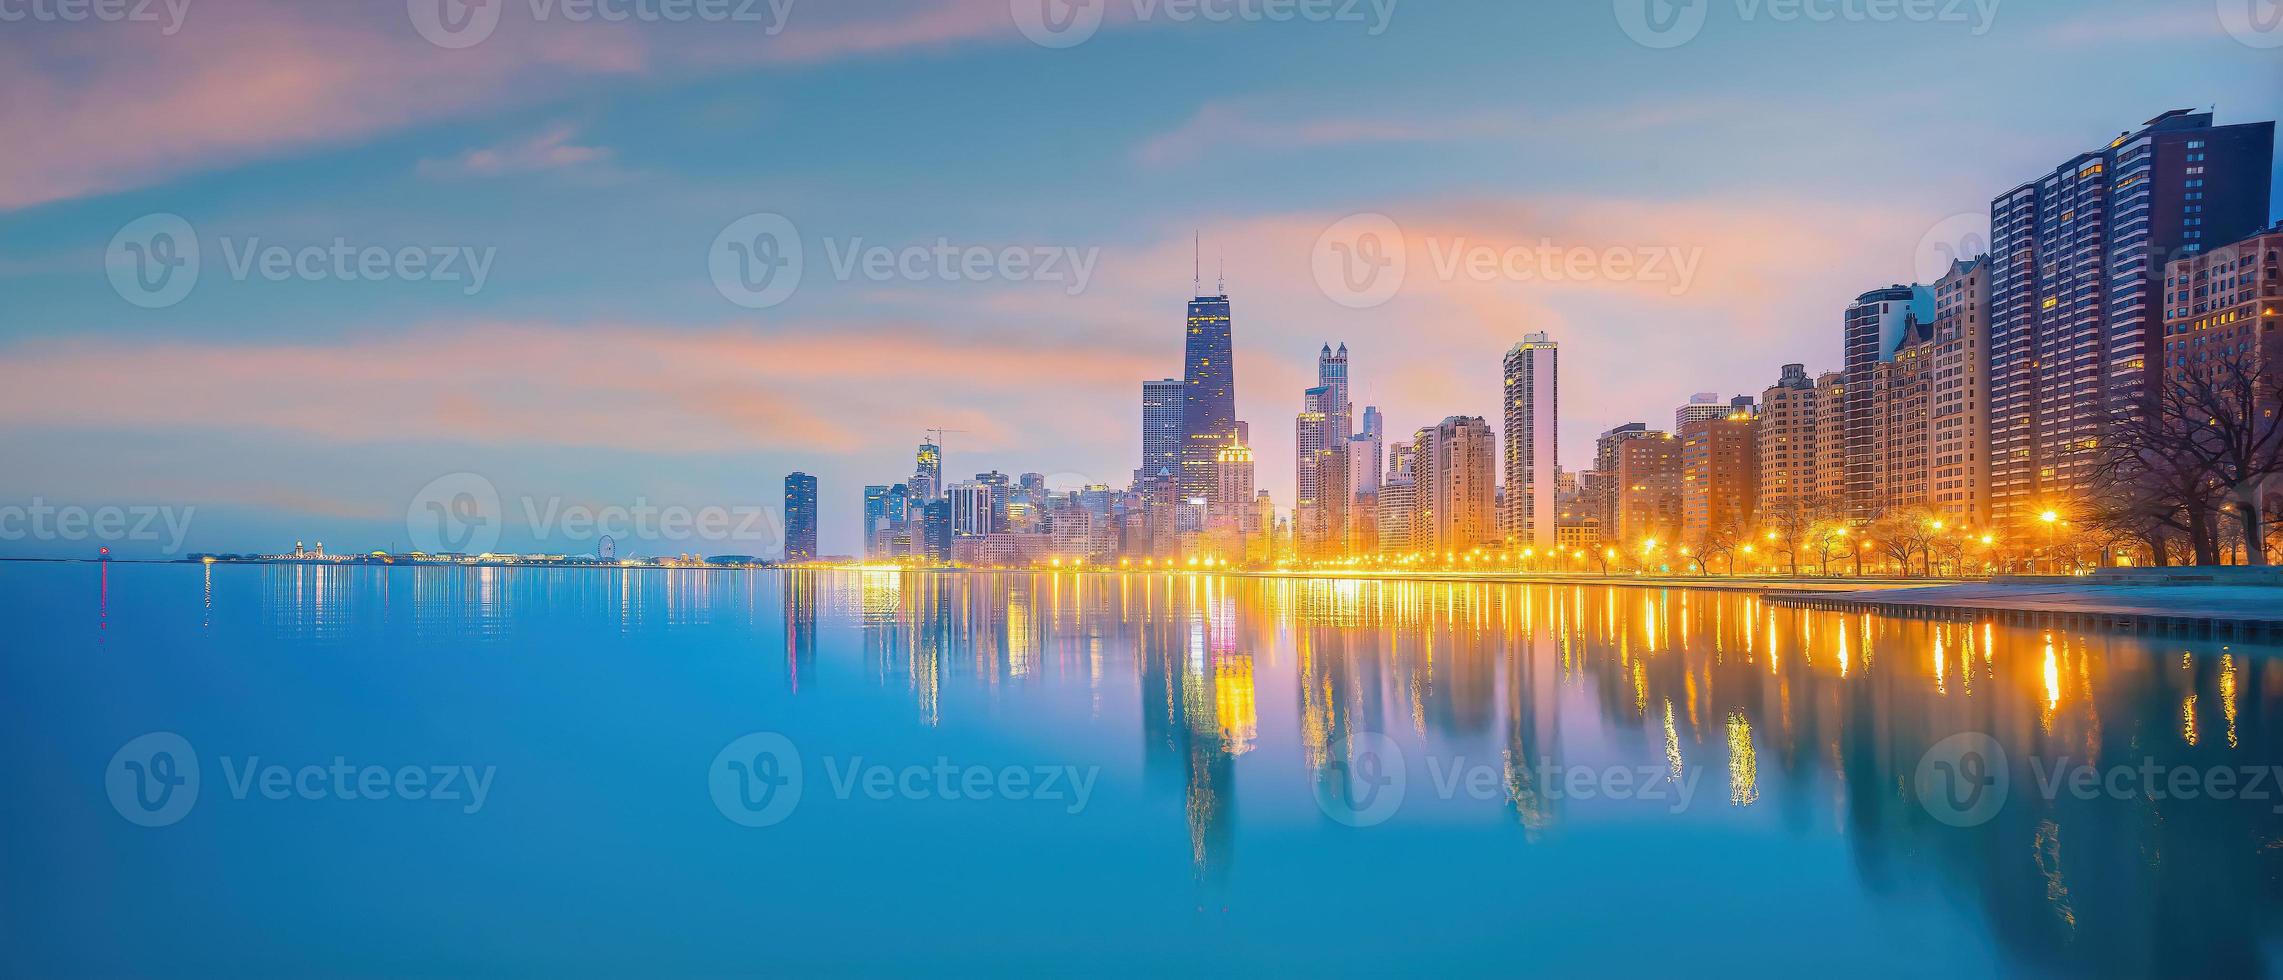 Skyline der Innenstadt von Chicago Stadtbild von Illinois, USA foto